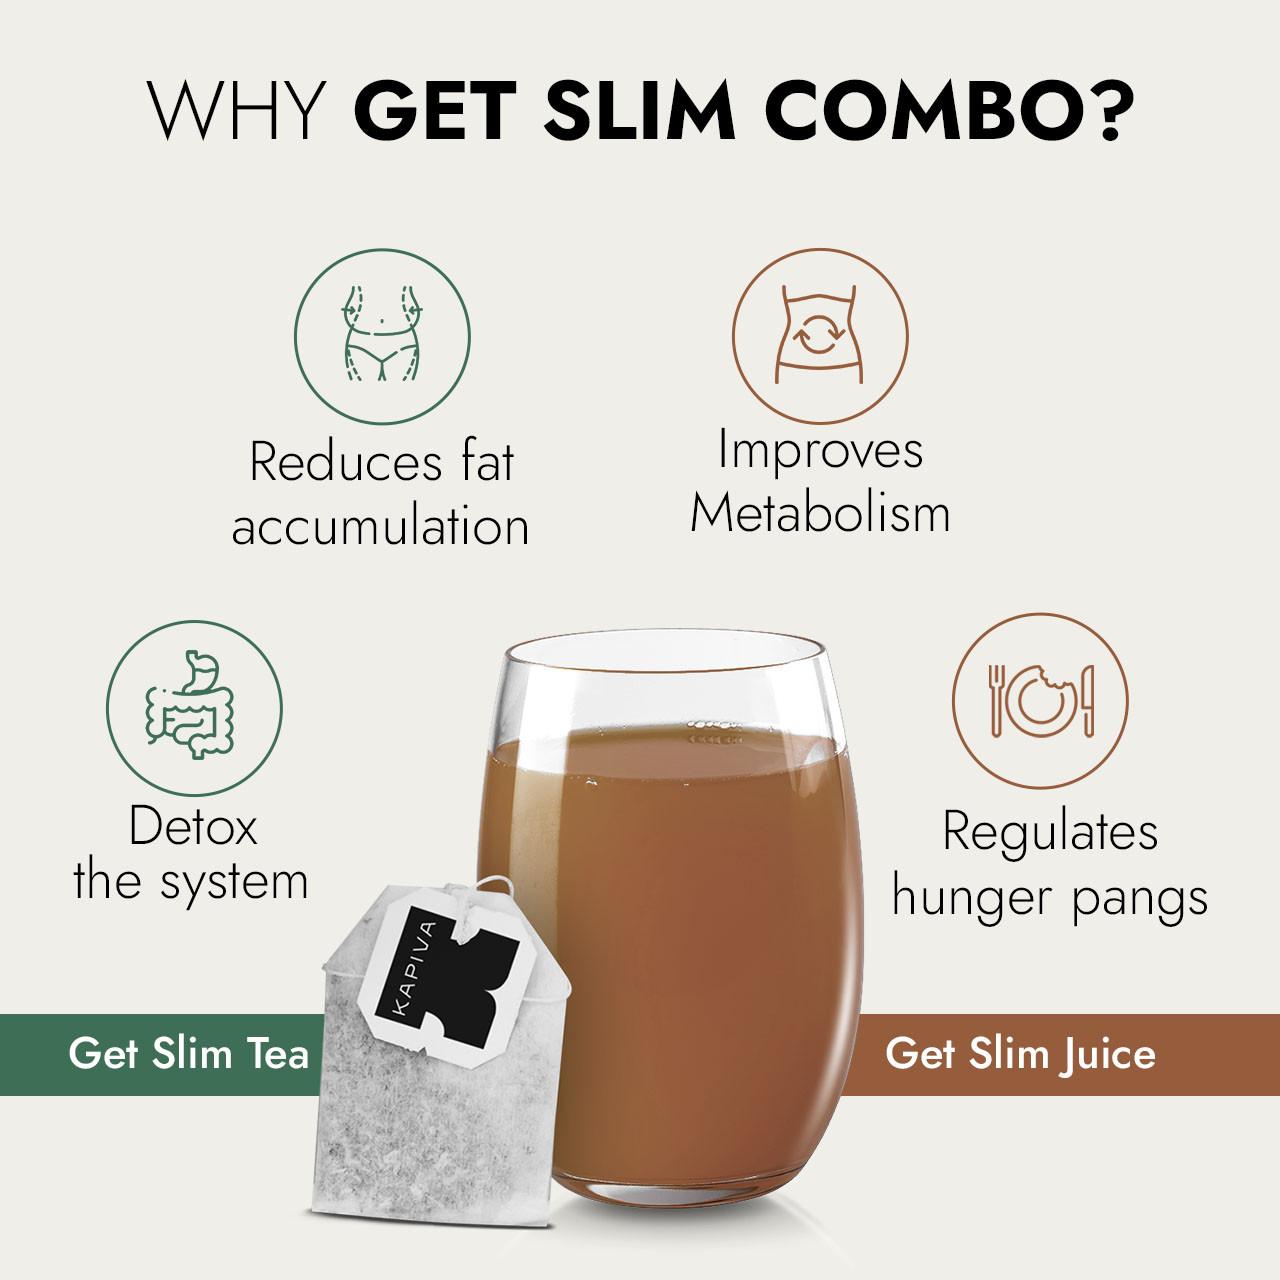 Get Slim (Juice and Tea) Combo